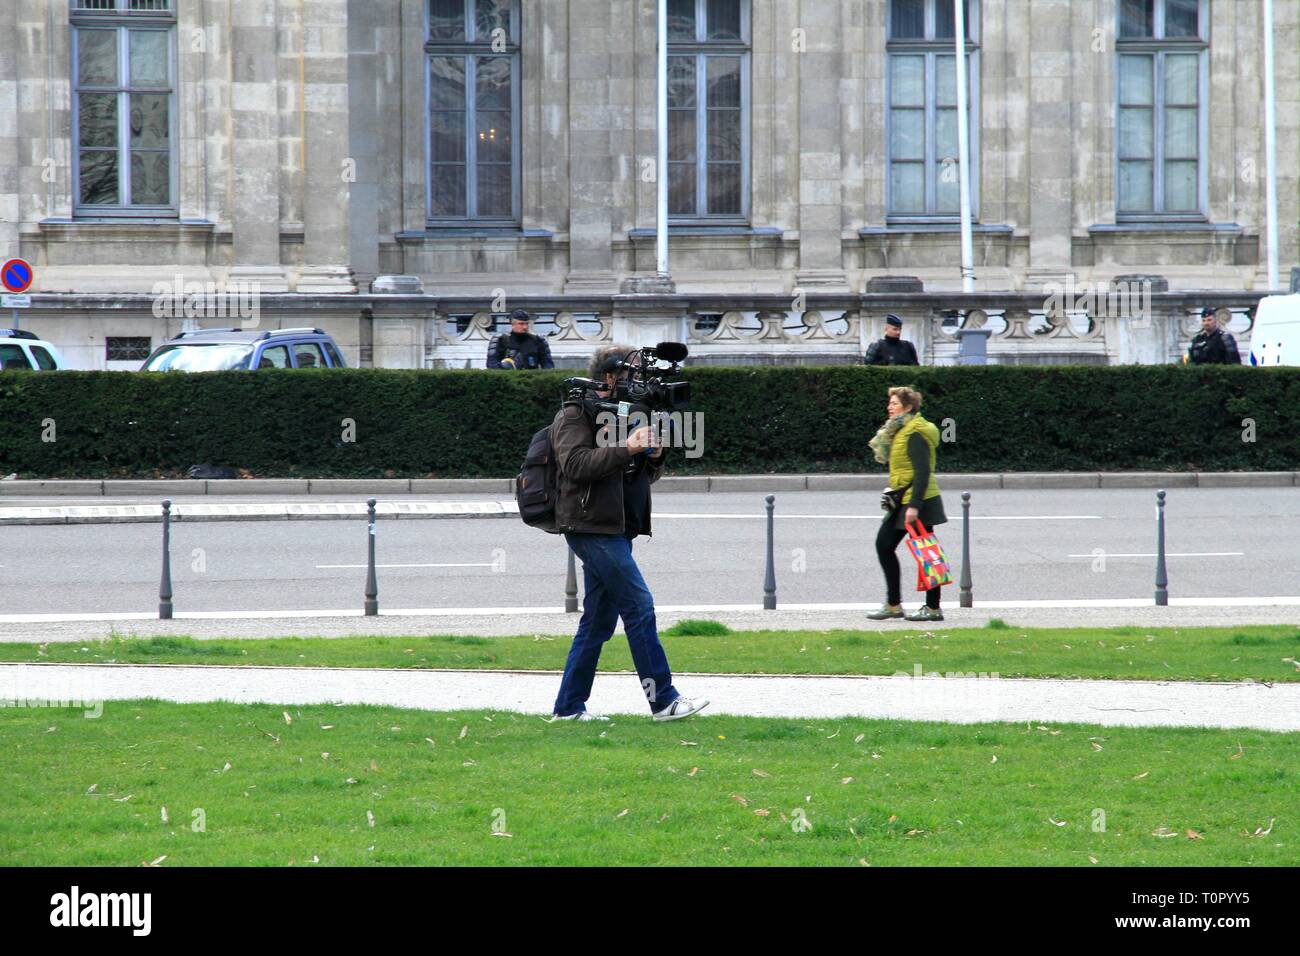 Illustrazione della media nel corso di una manifestazione sindacale, compresa la radio Francia Bleu Isere durante un colloquio con un manifestante e un cameraman. Foto Stock